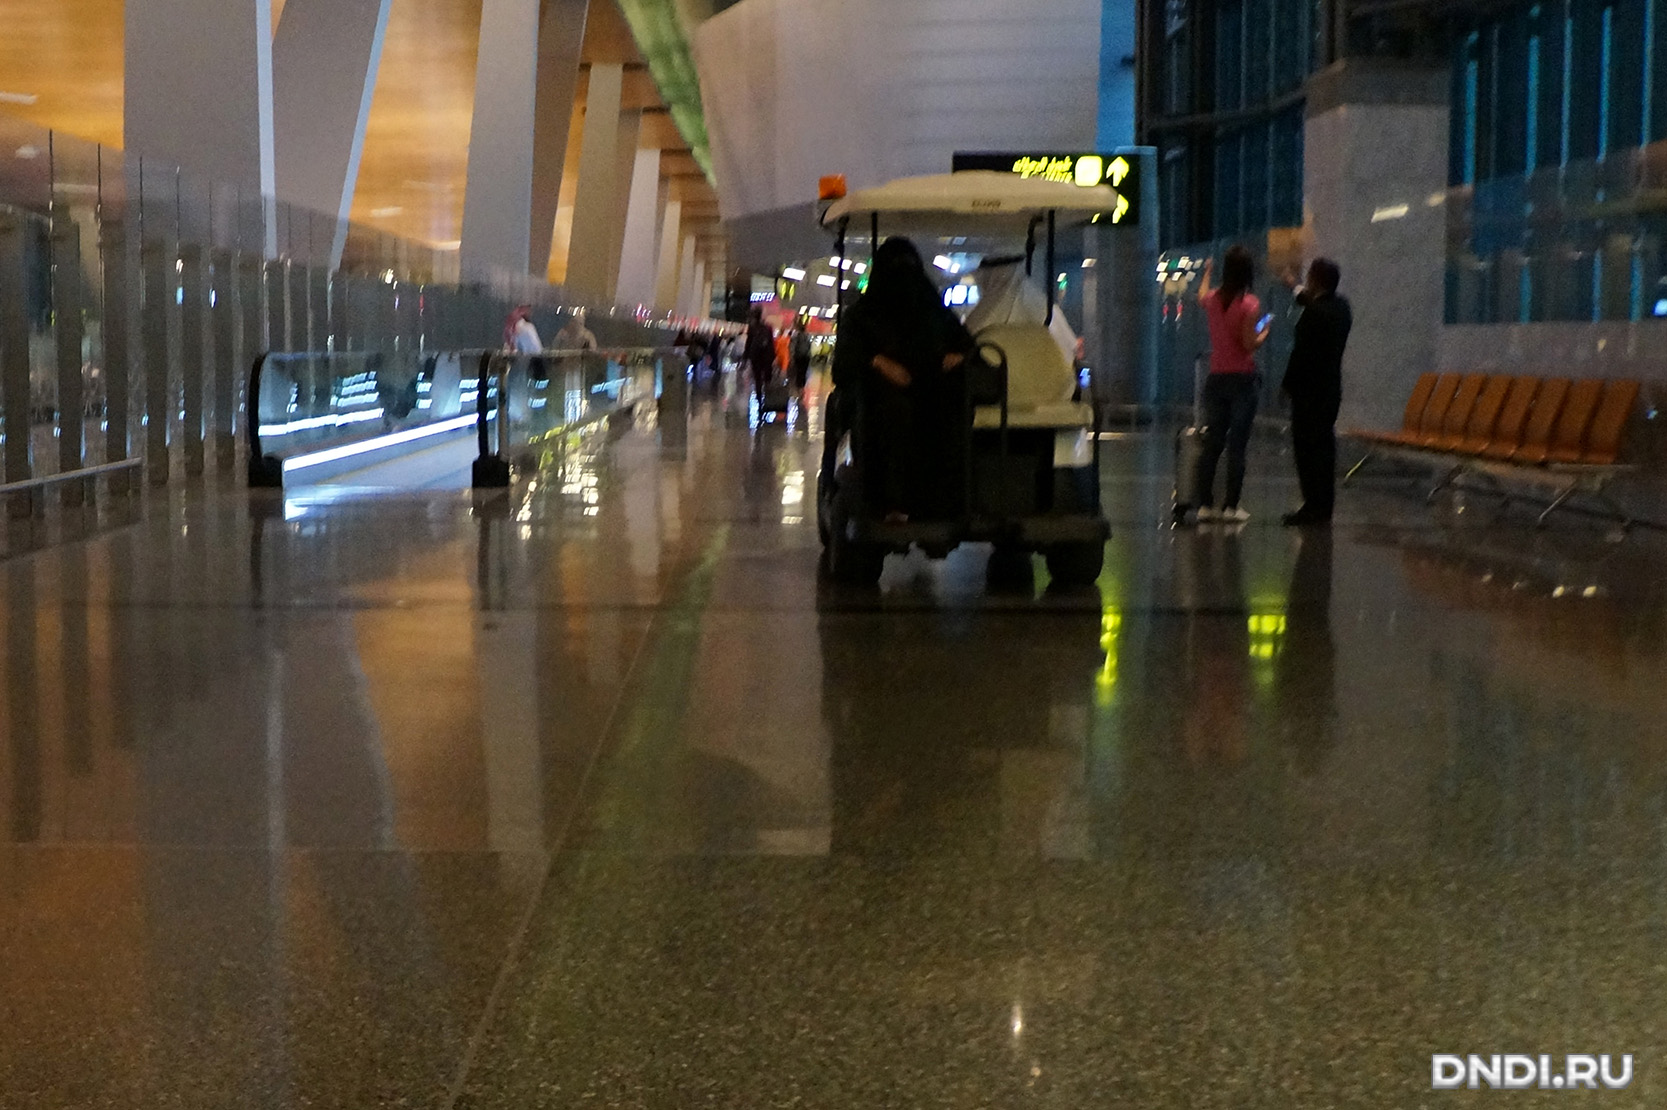 qatarairways014